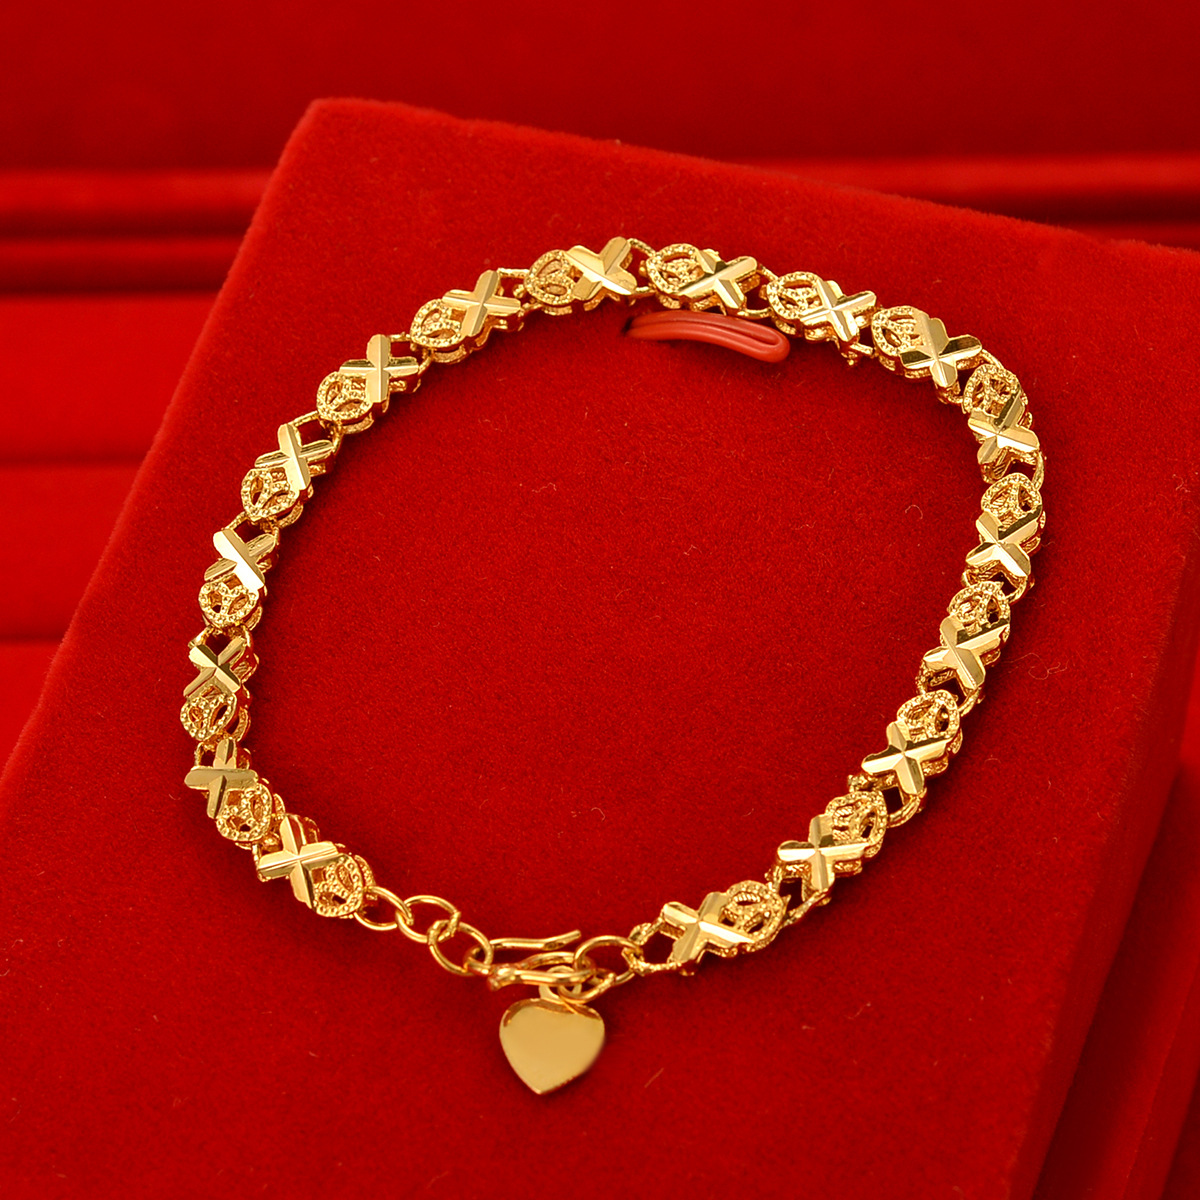 Bracelet 18k Saudi Gold - 4R's SAUDI GOLD 18k | Facebook